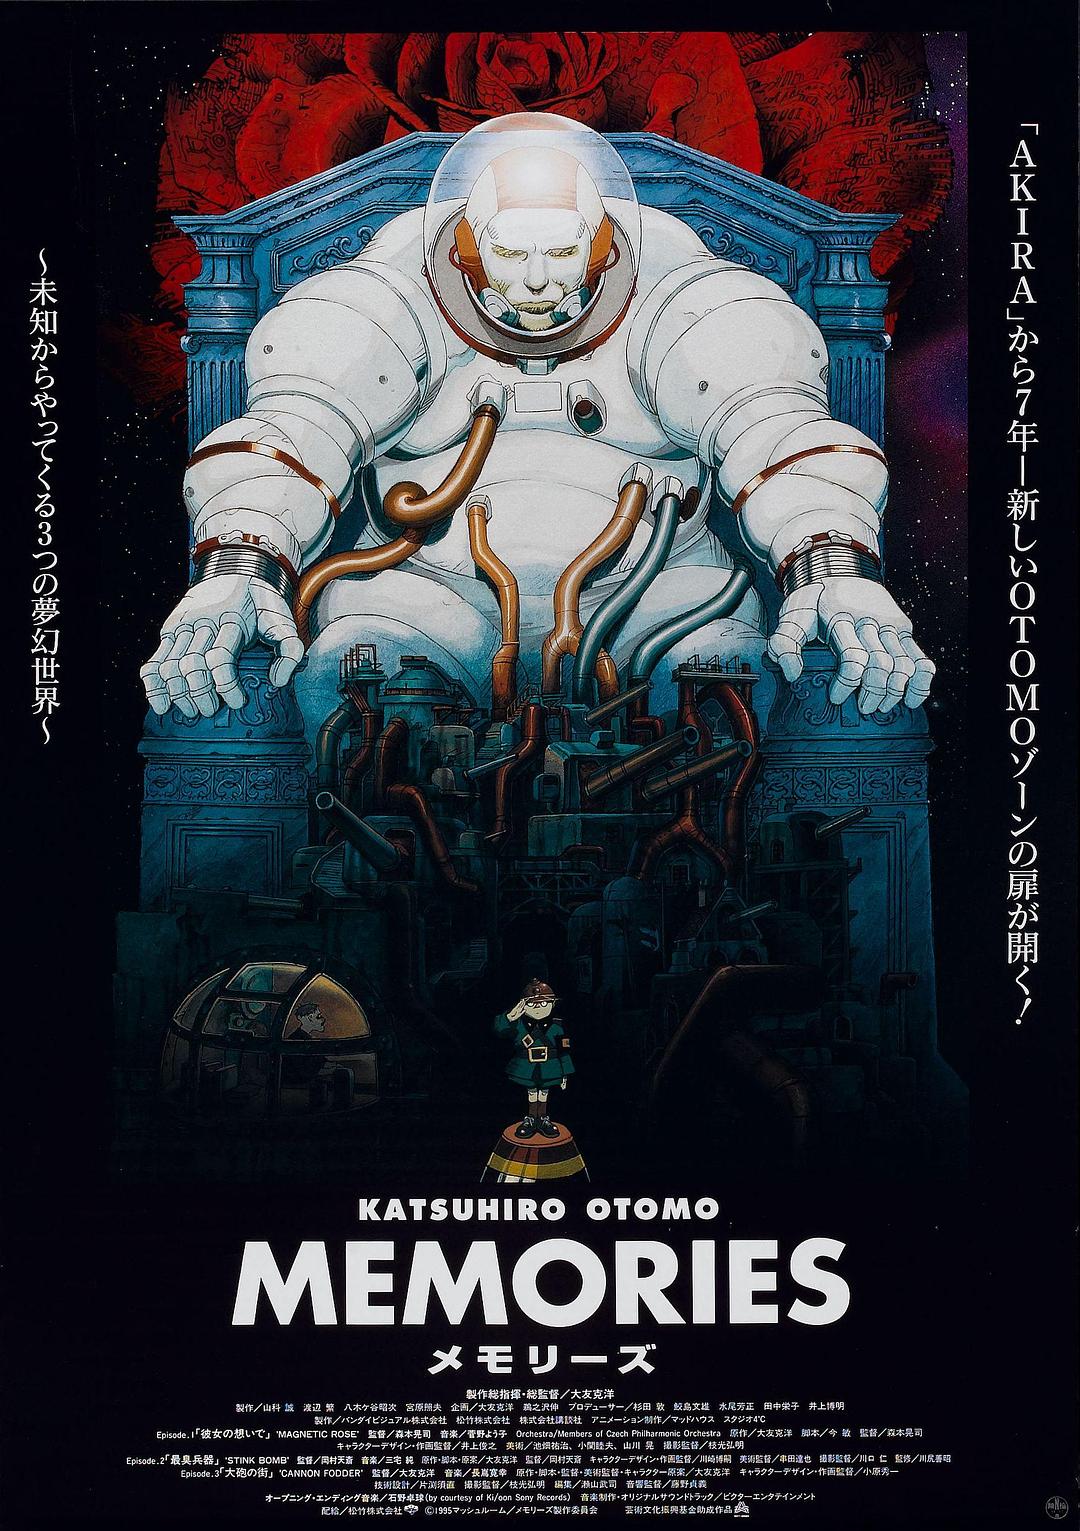 回忆三部曲/记忆 Memories.1995.JAPANESE.1080p.BluRay.AVC.TrueHD.5.1-TiMELESS 34.59GB-1.png